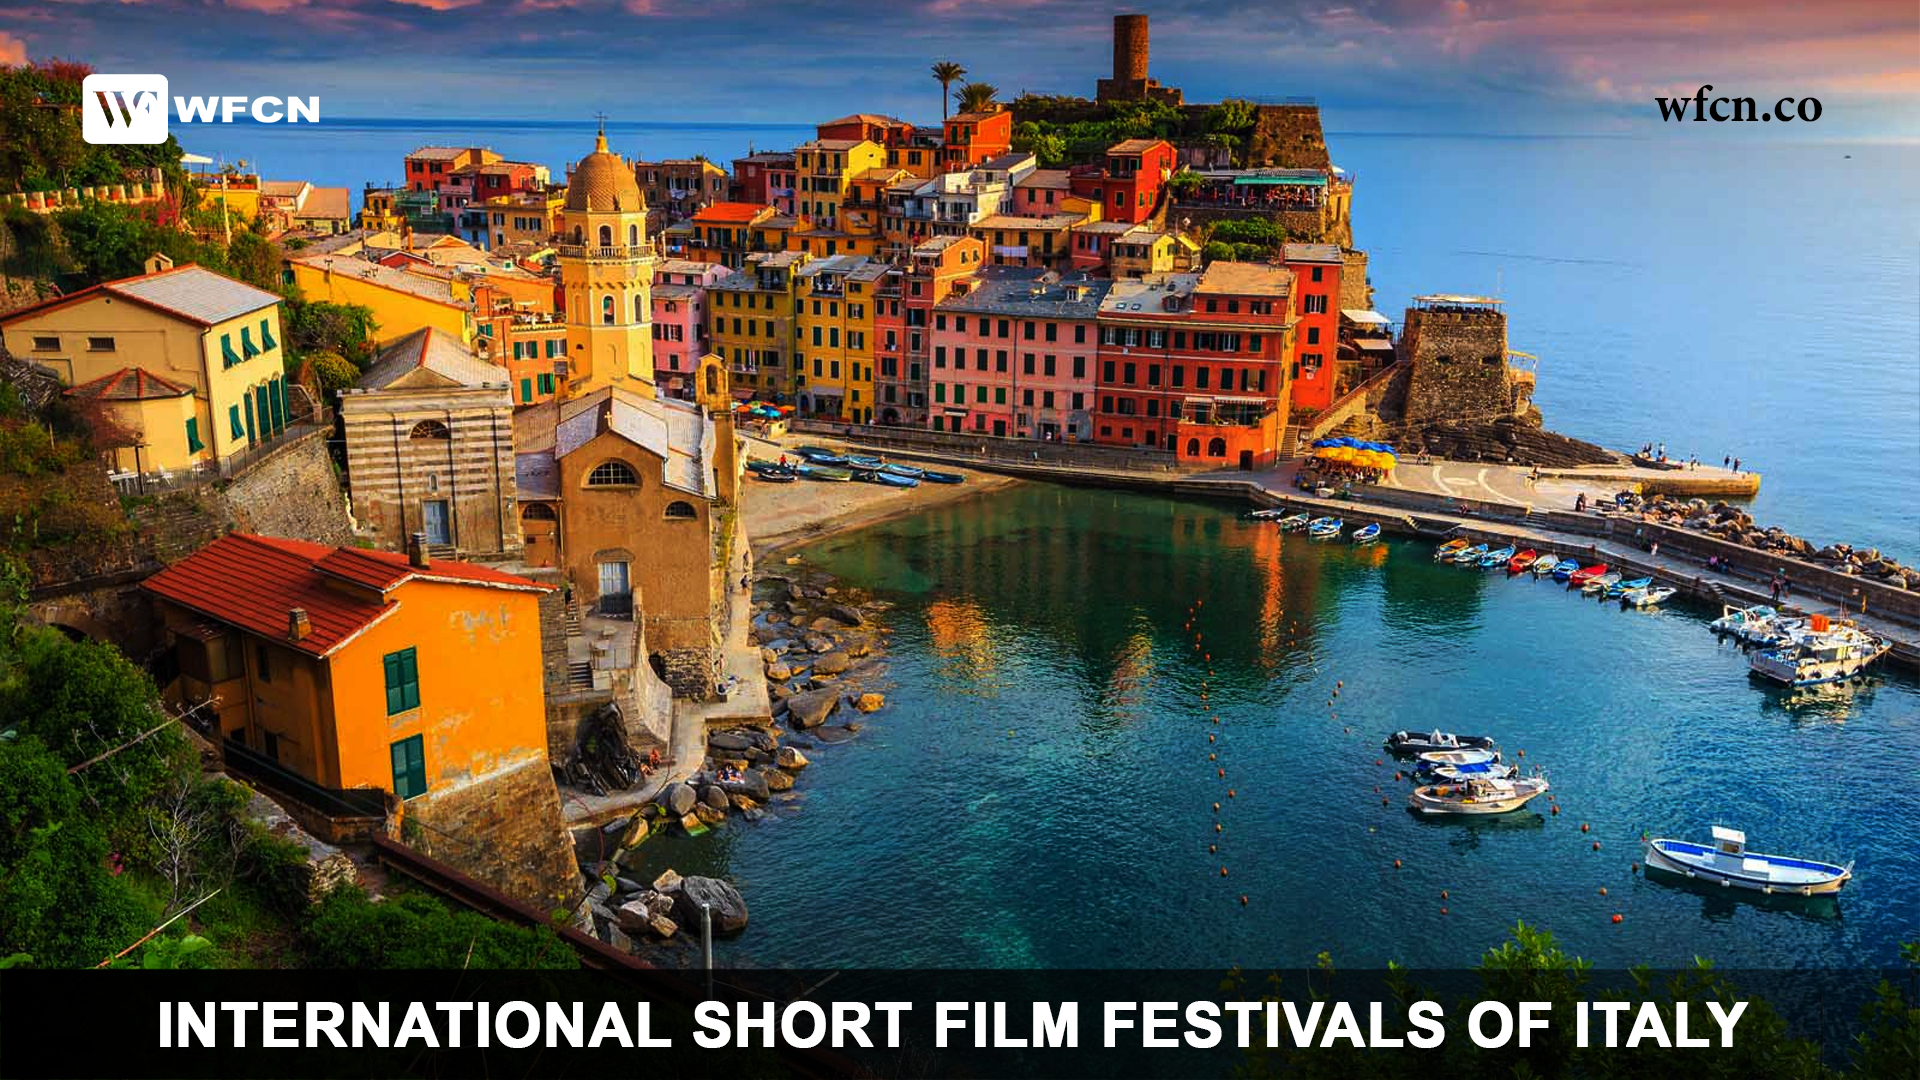 International Short Film Festivals of Italy